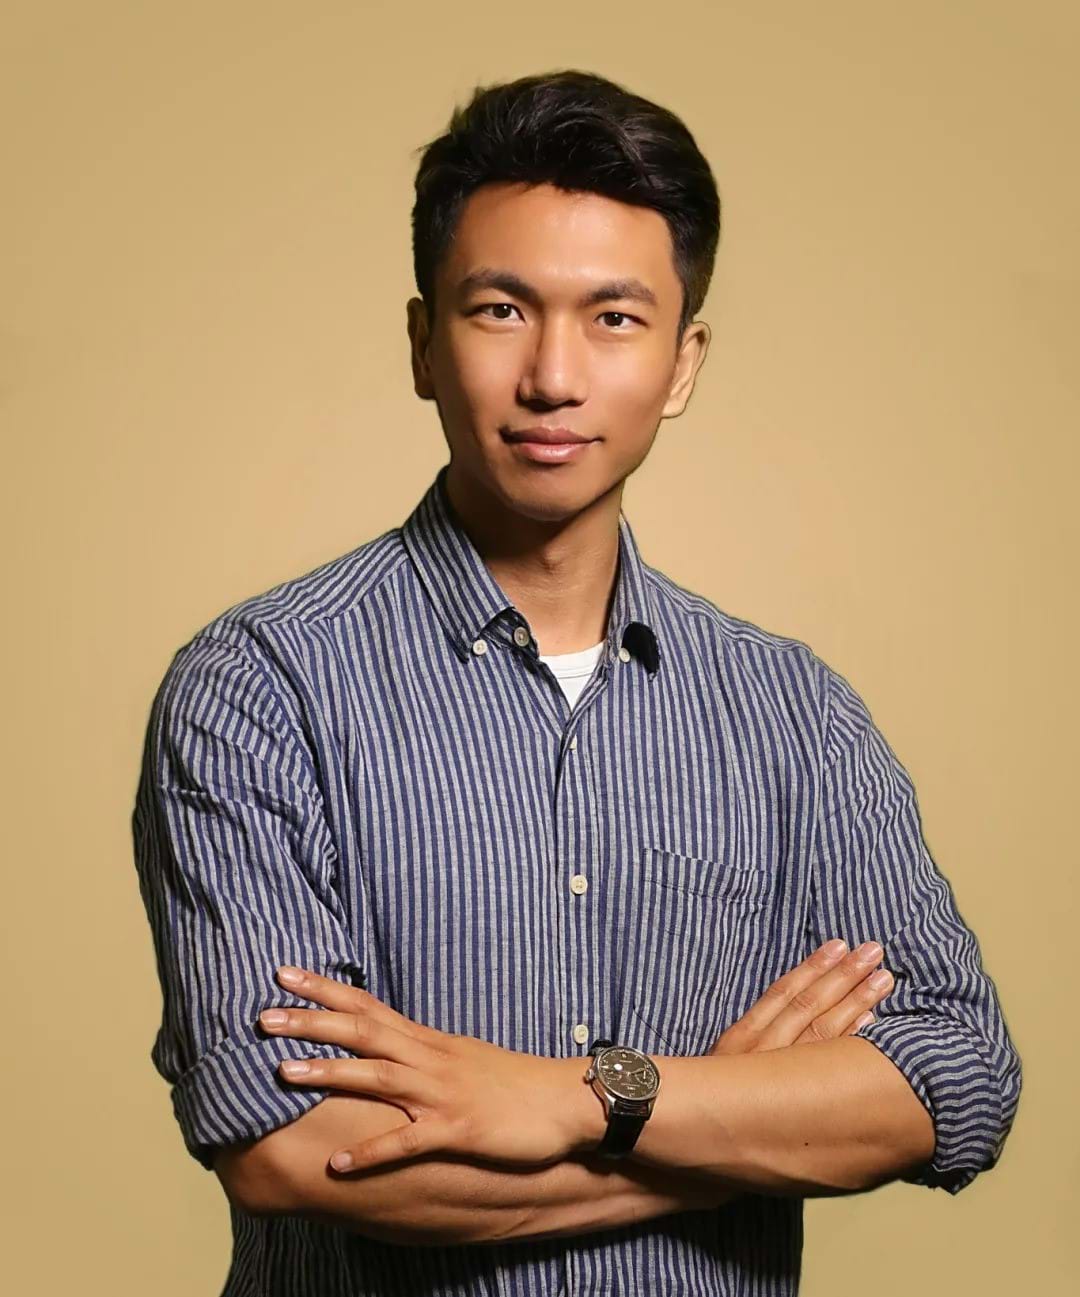 亚裔家庭服务中心  “亚裔专项支持服务”项目主管 Alex Wang